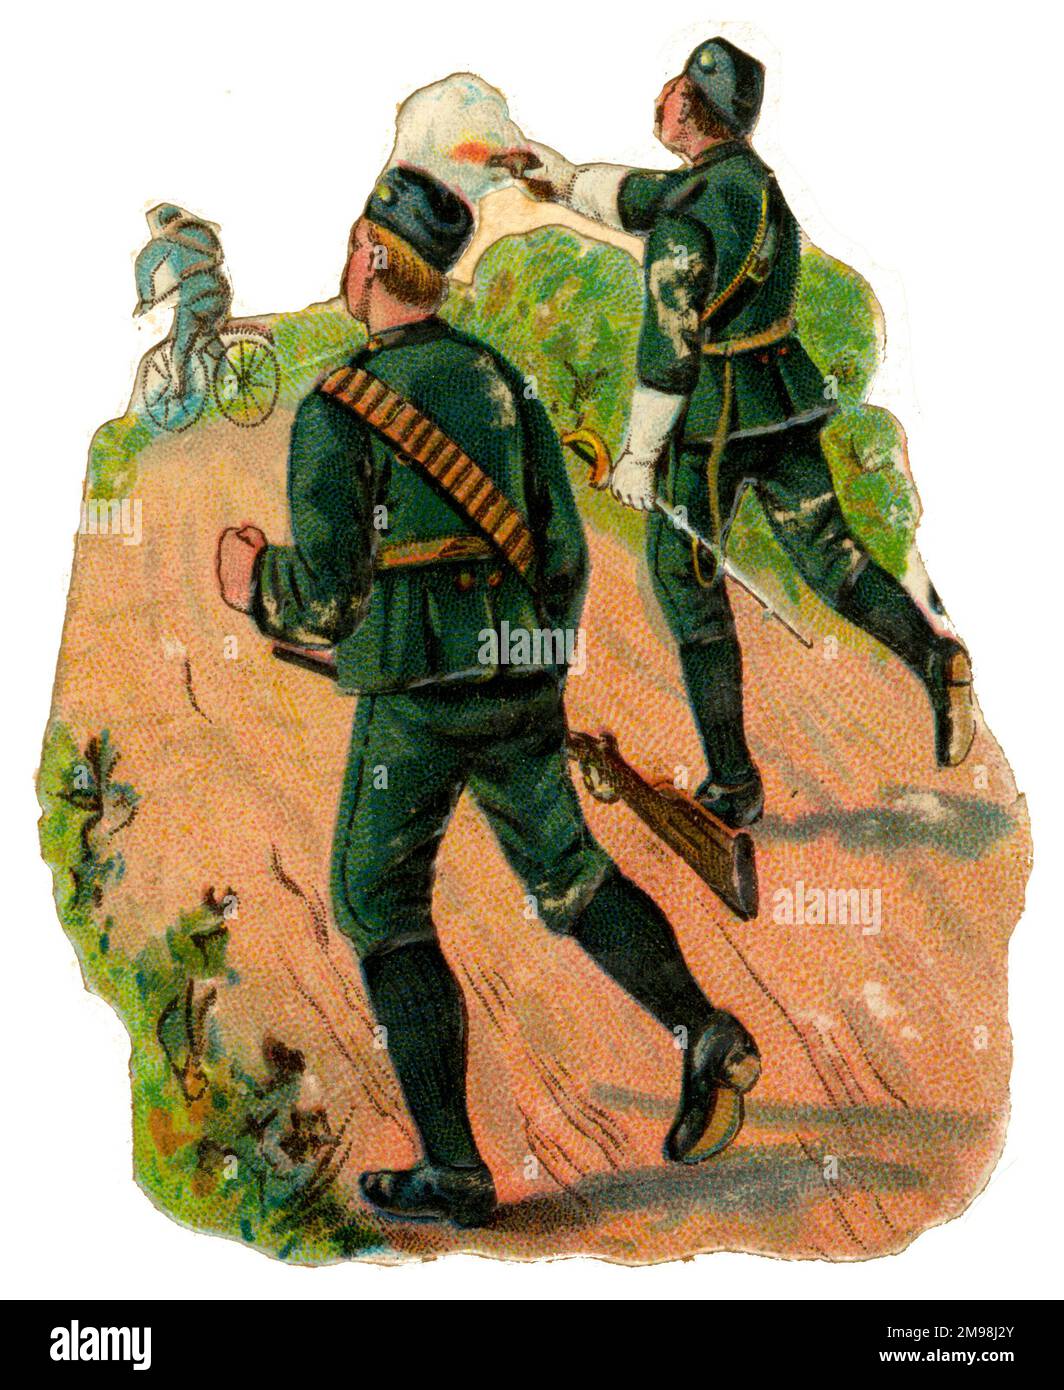 Viktorianischer Schrott - Soldaten, die einen Radfahrer verfolgen. Stockfoto